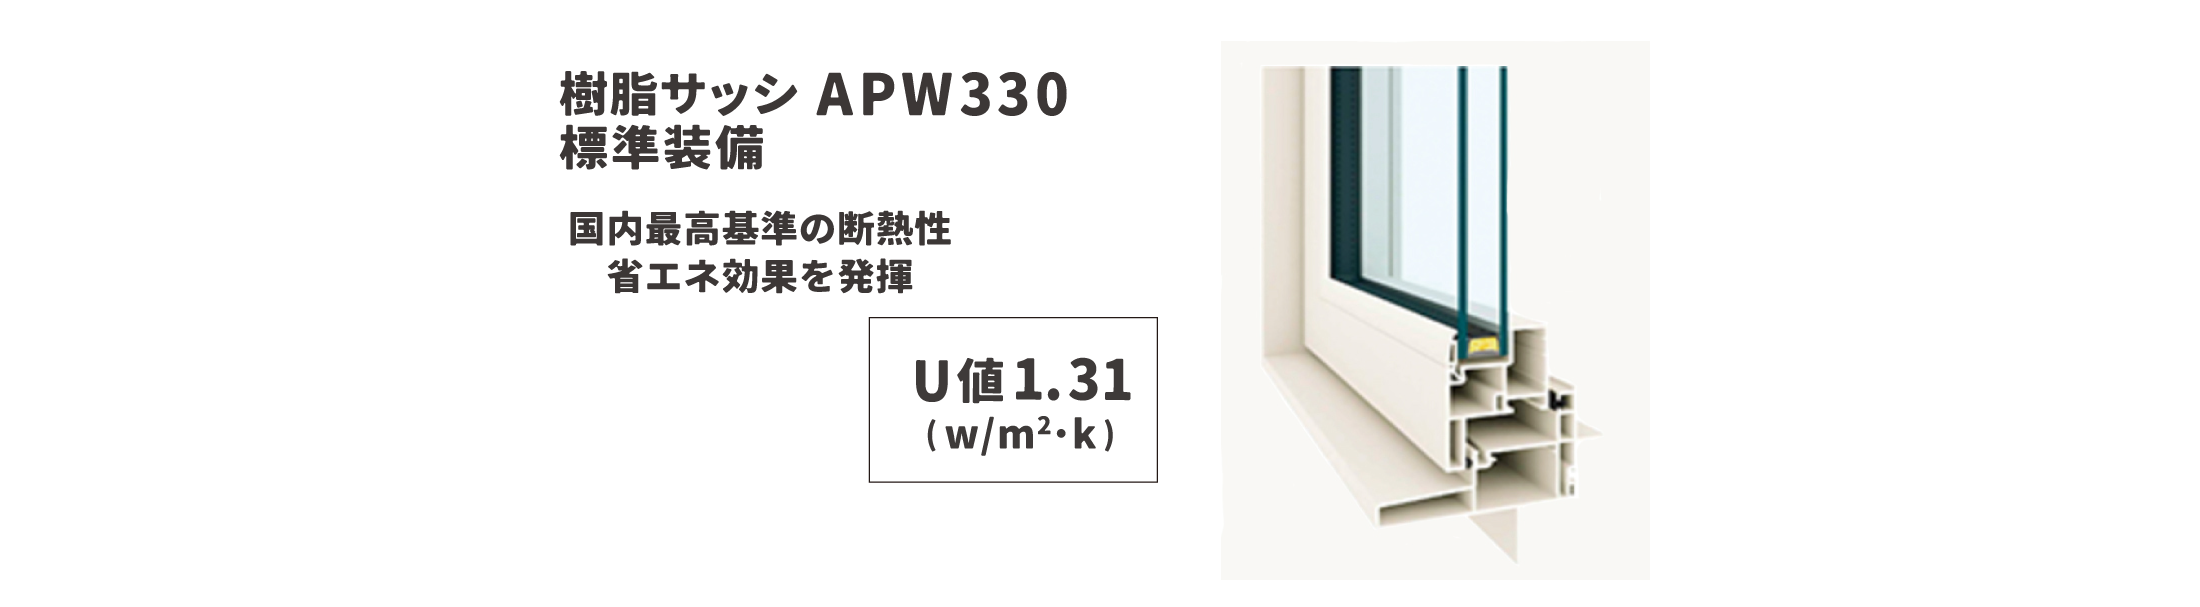 オール樹脂サッシ「APW330」標準装備